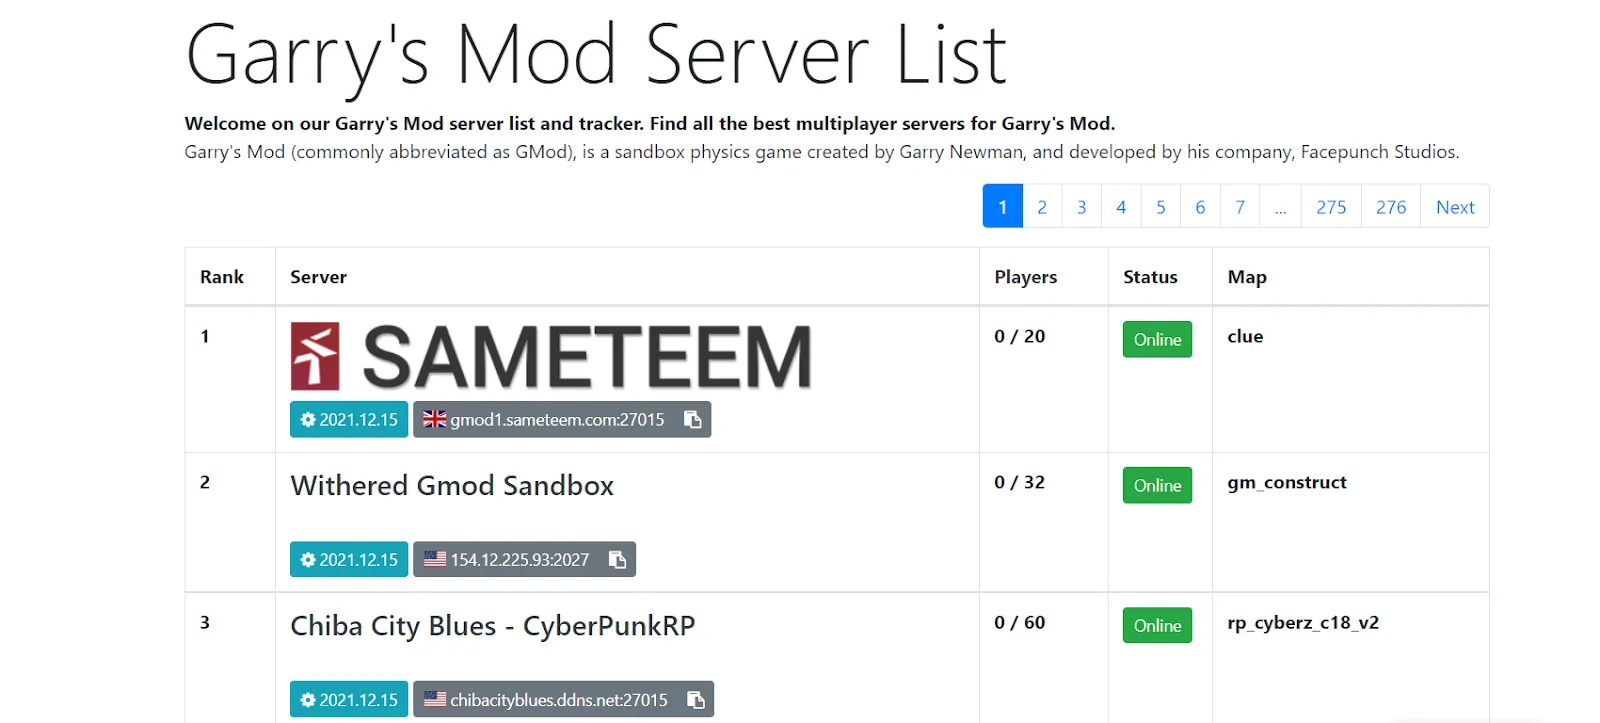 Garry's Mod server list